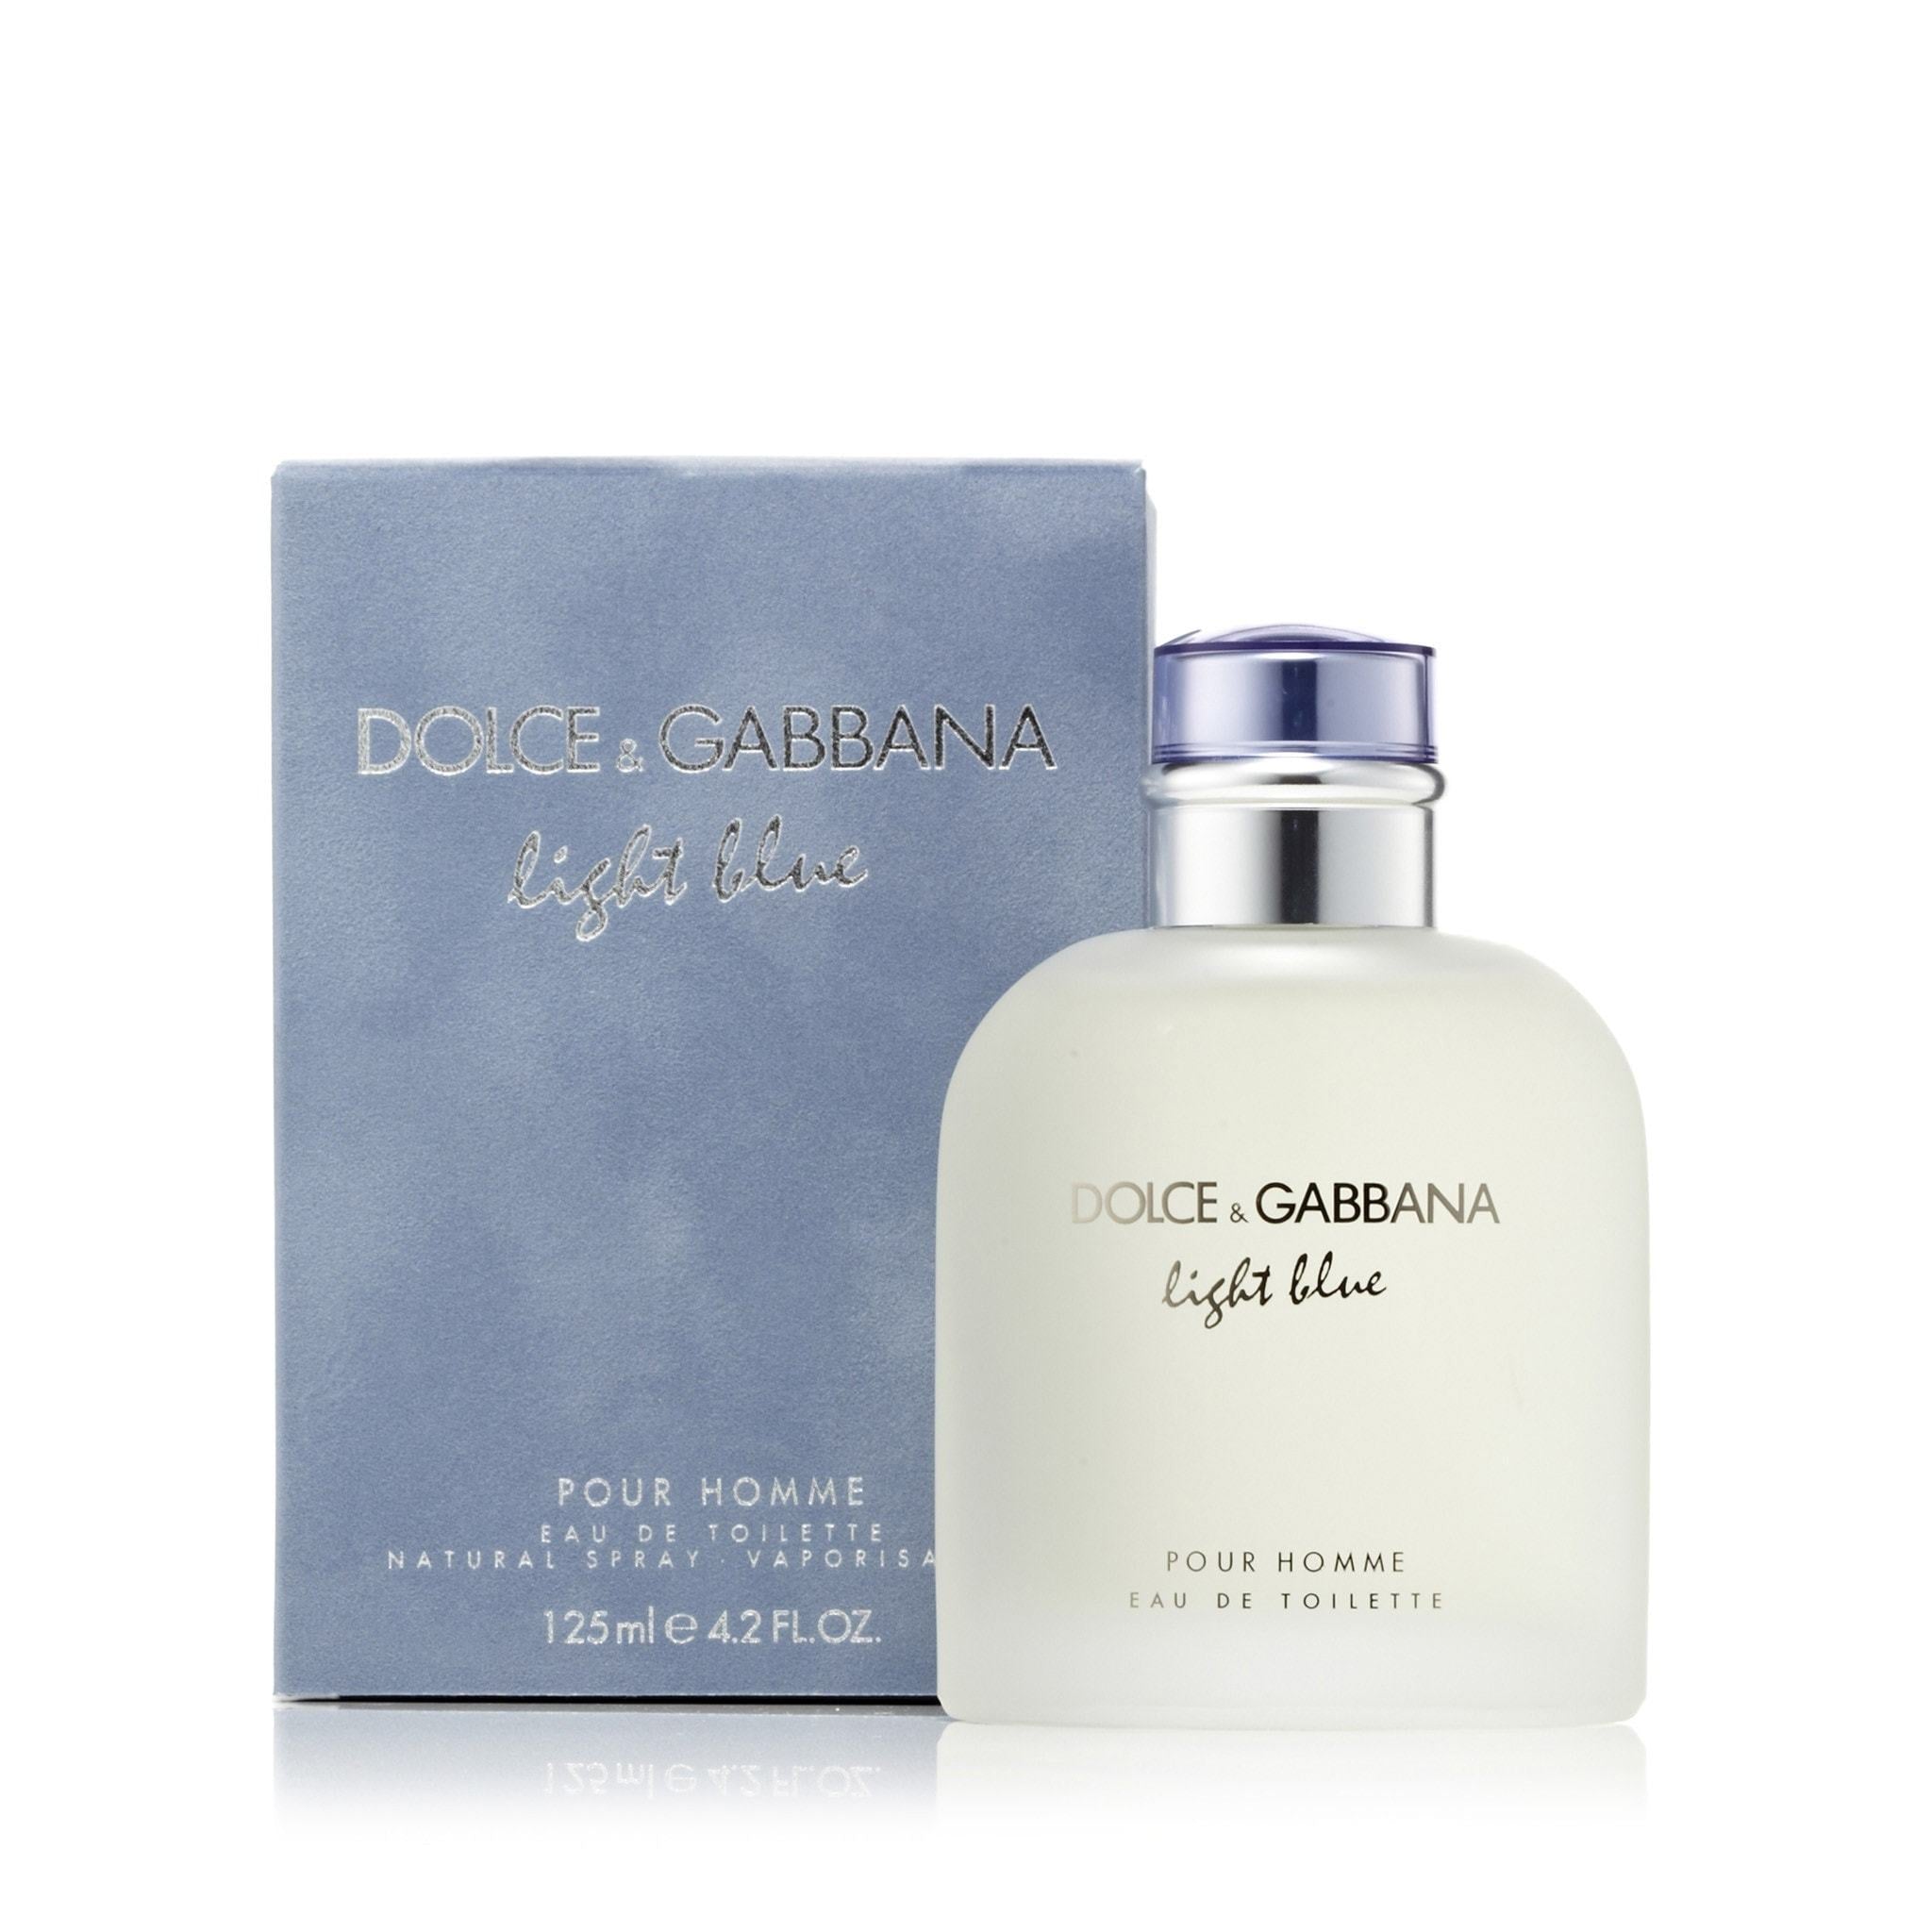 Dolce & Gabbana K Men 5 oz EDT Spray